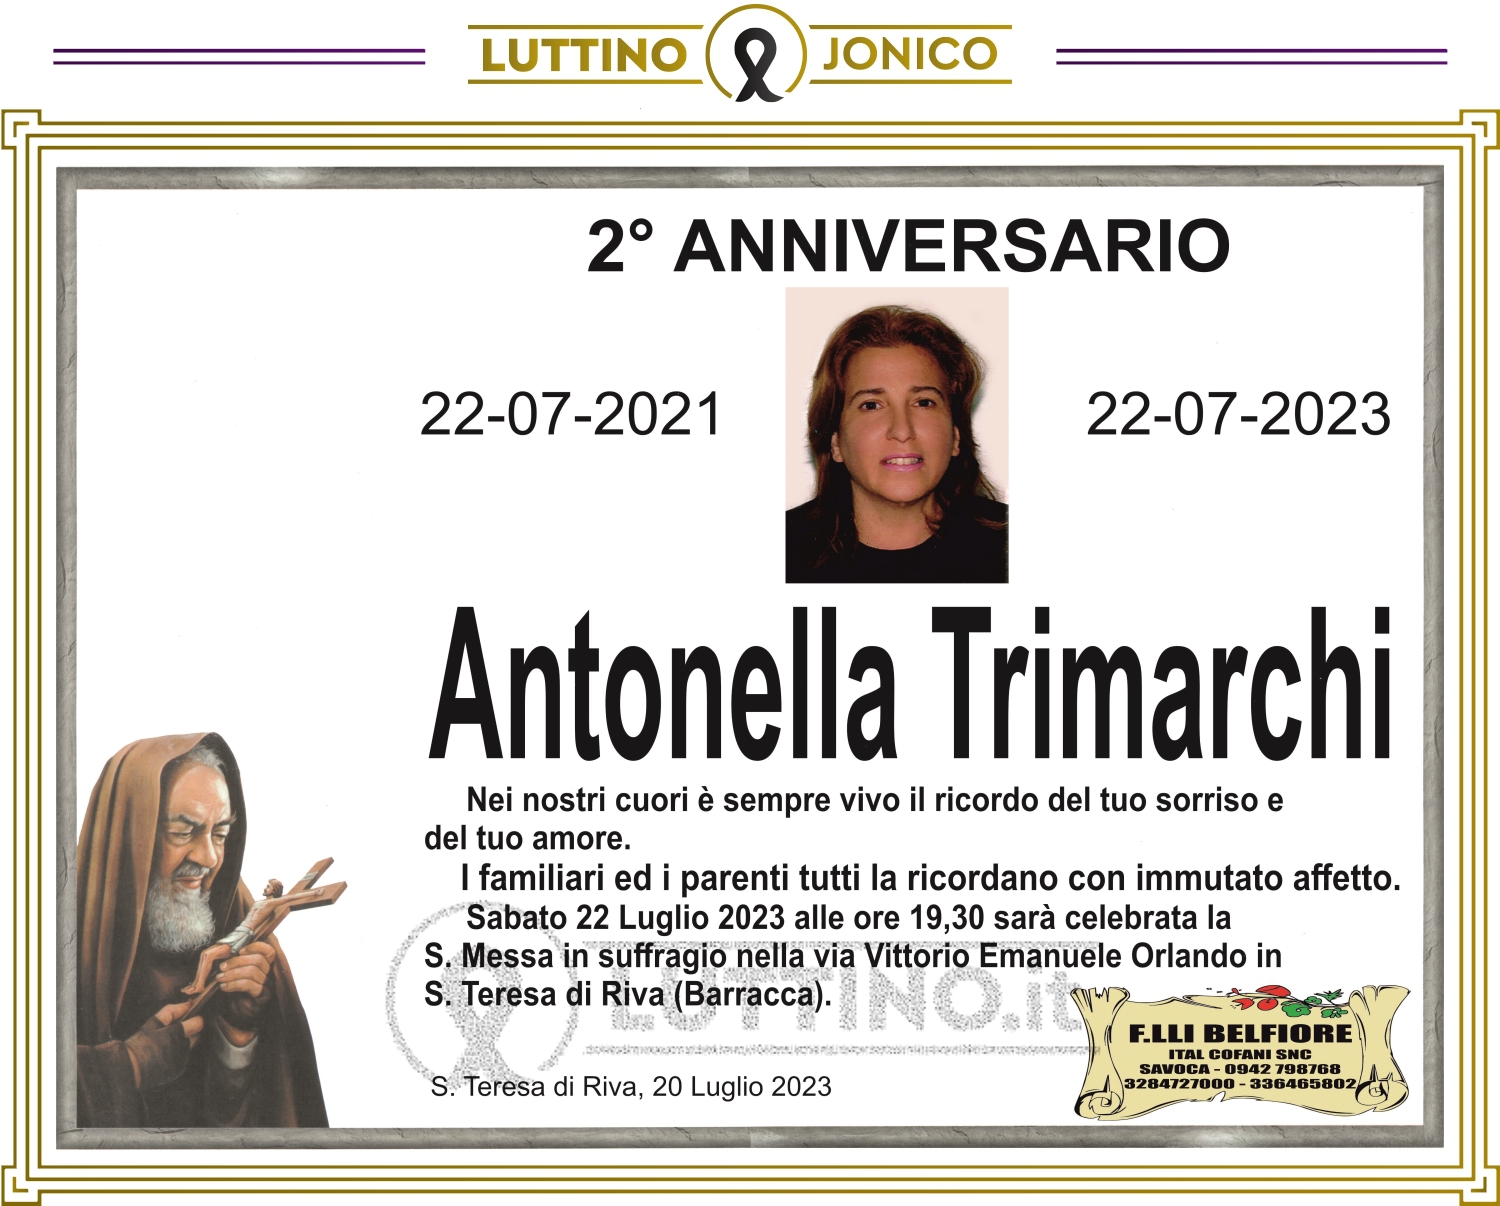 Antonella Trimarchi